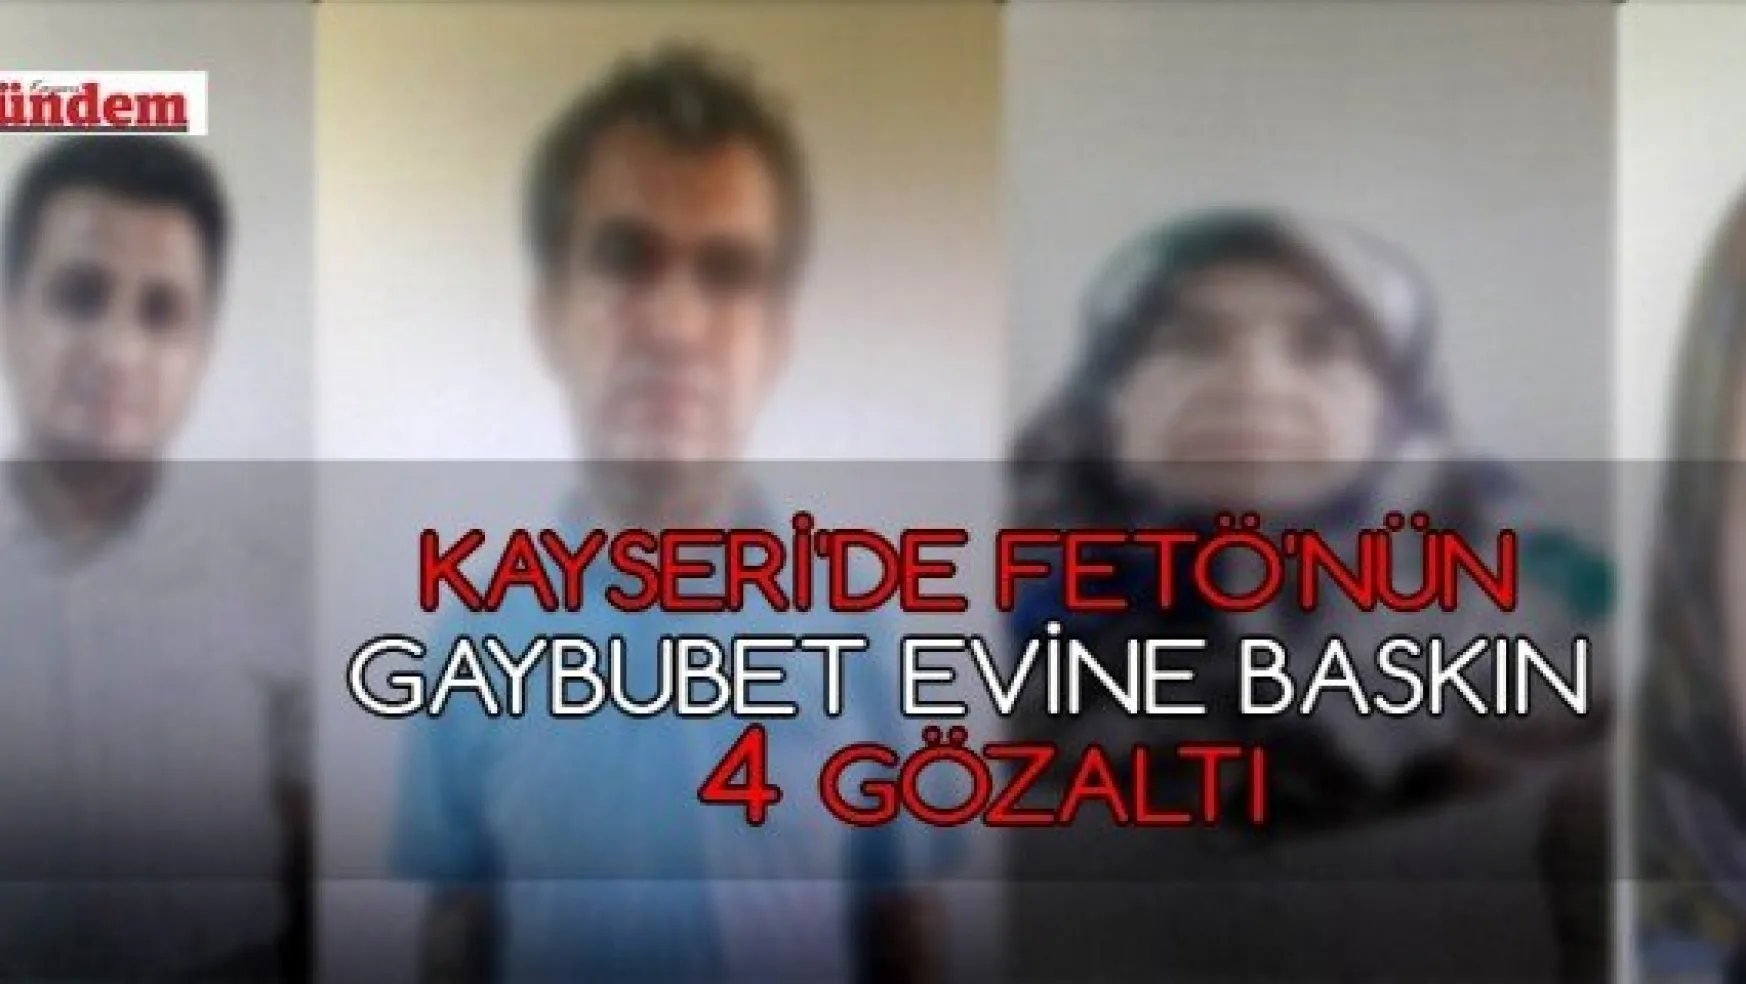 Kayseri'de FETÖ'nün gaybubet evine baskın: 4 gözaltı